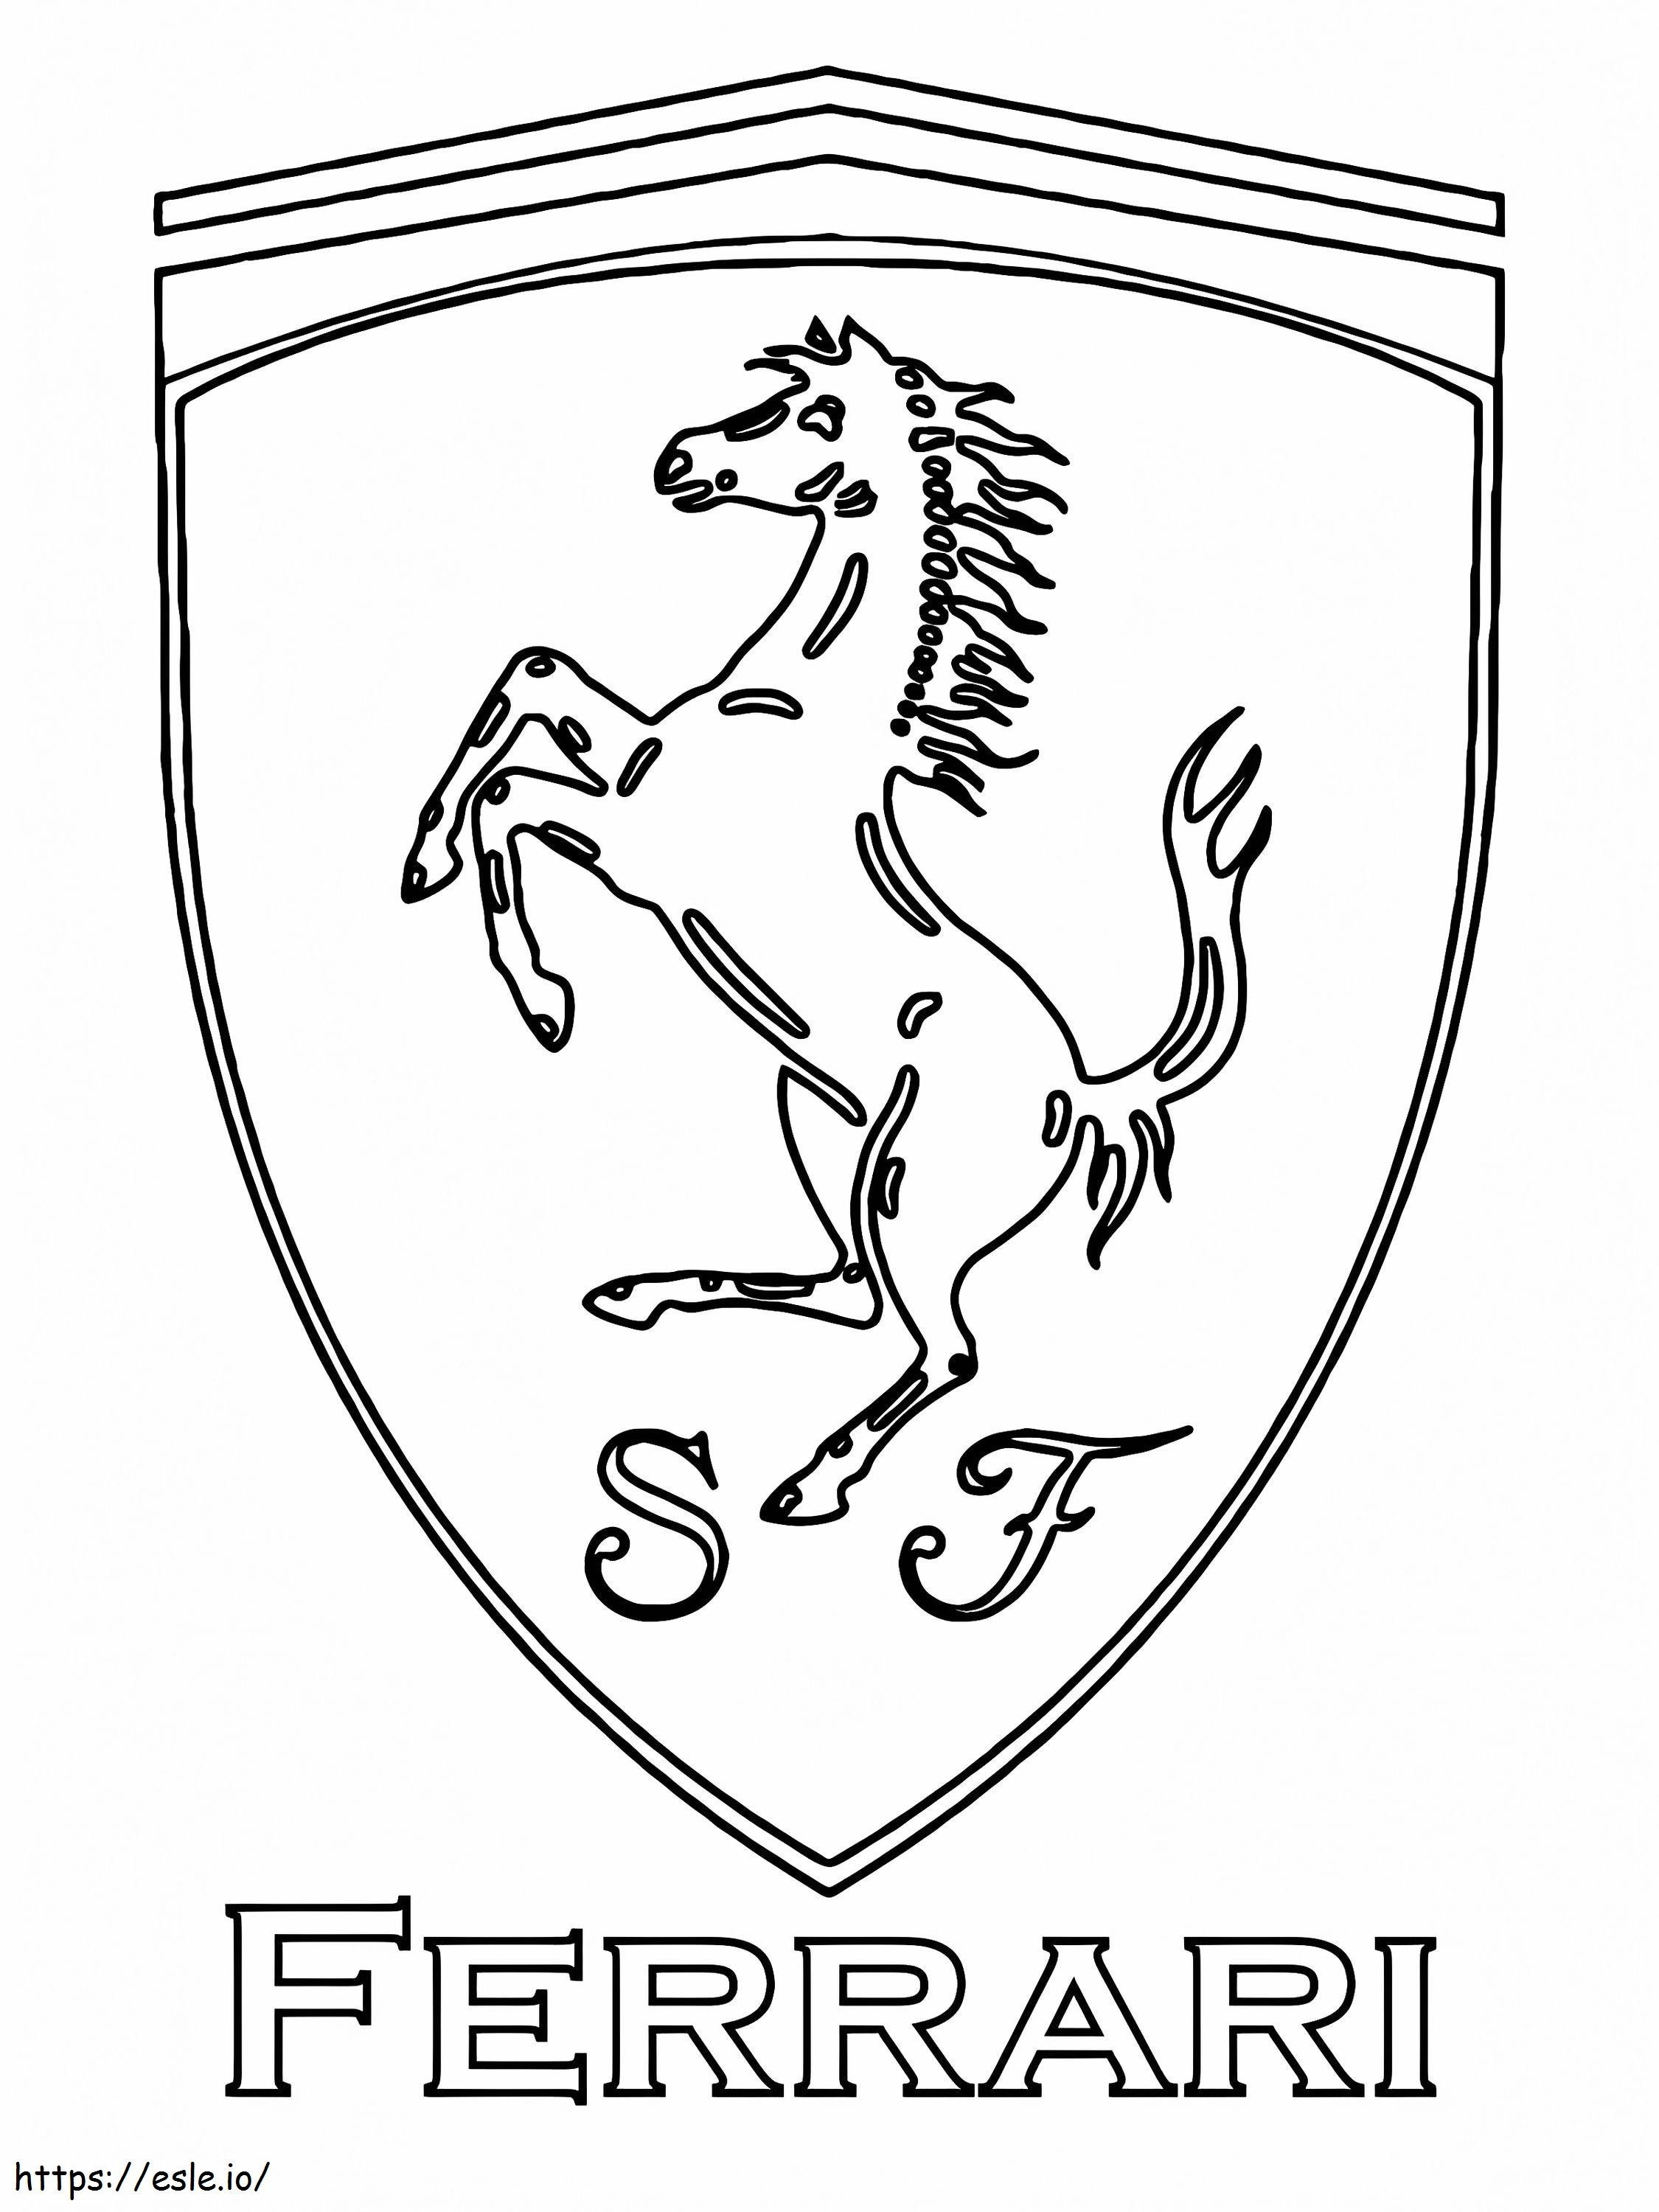 Logo Mobil Ferrari Gambar Mewarnai